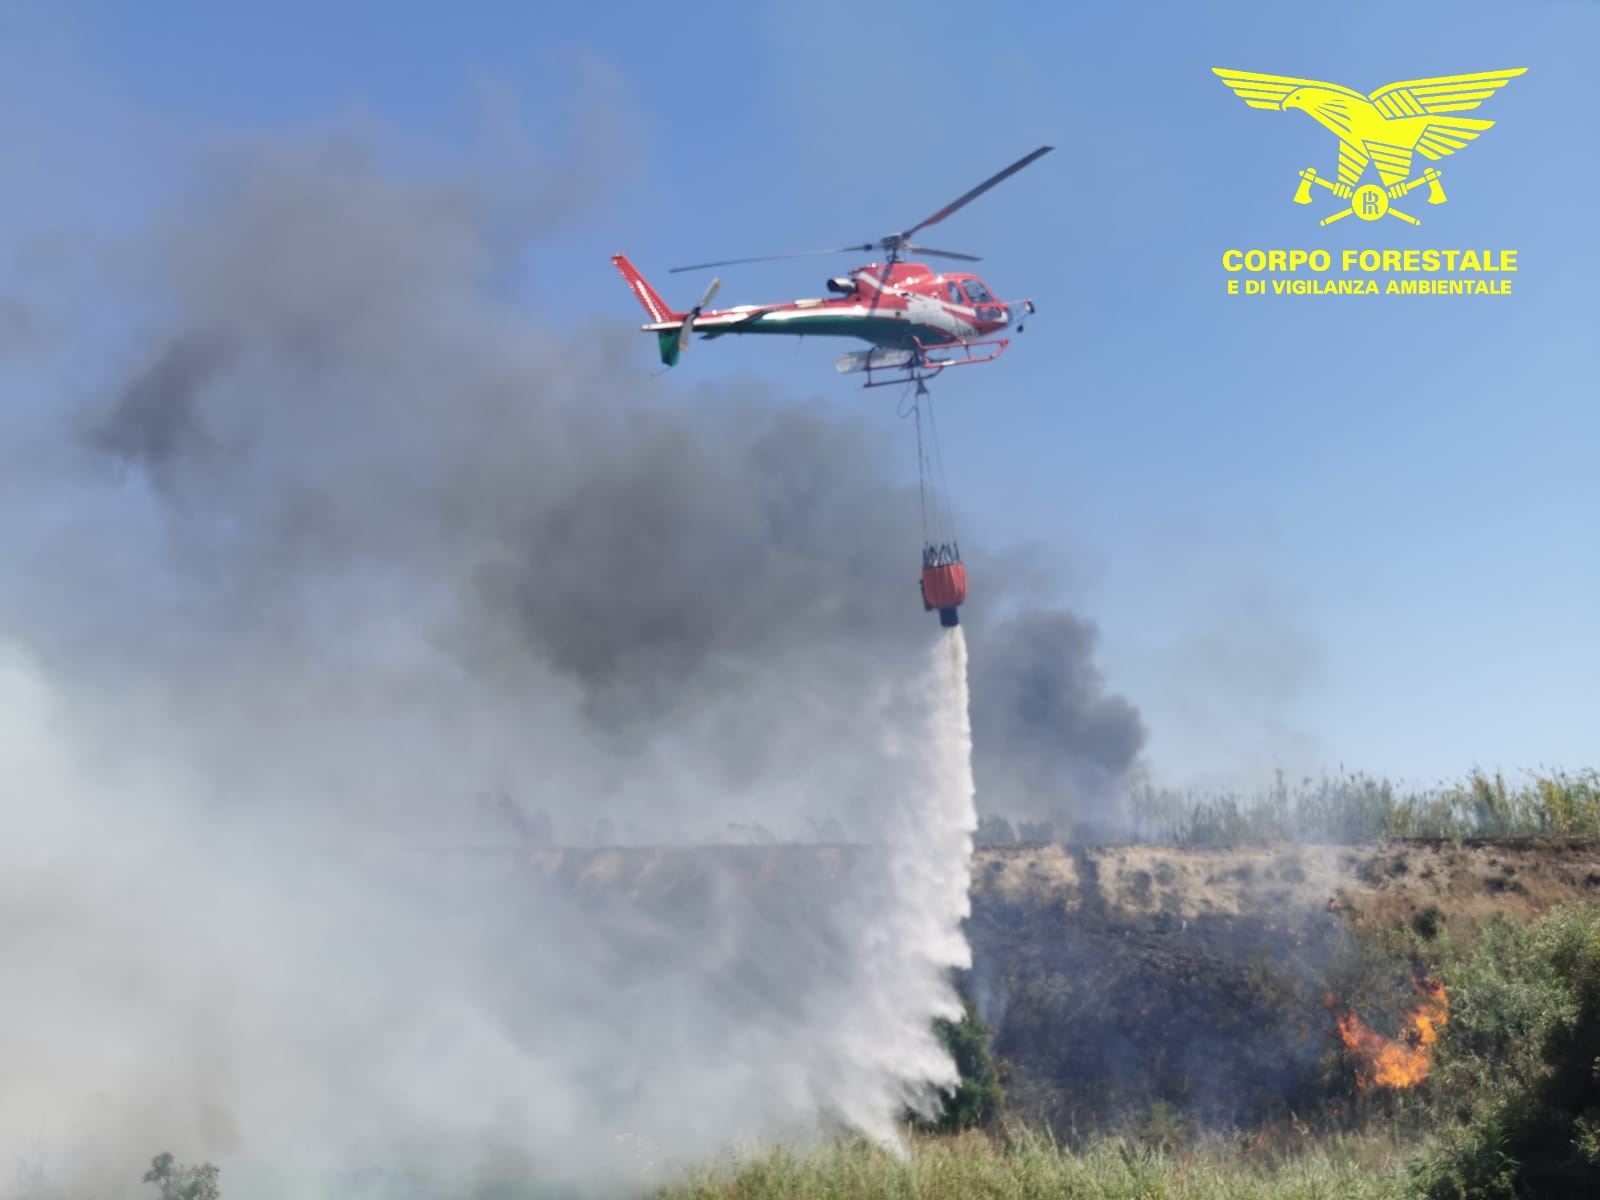 Sardegna brucia: oggi 28 incendi per 10 intervento dell'elicottero